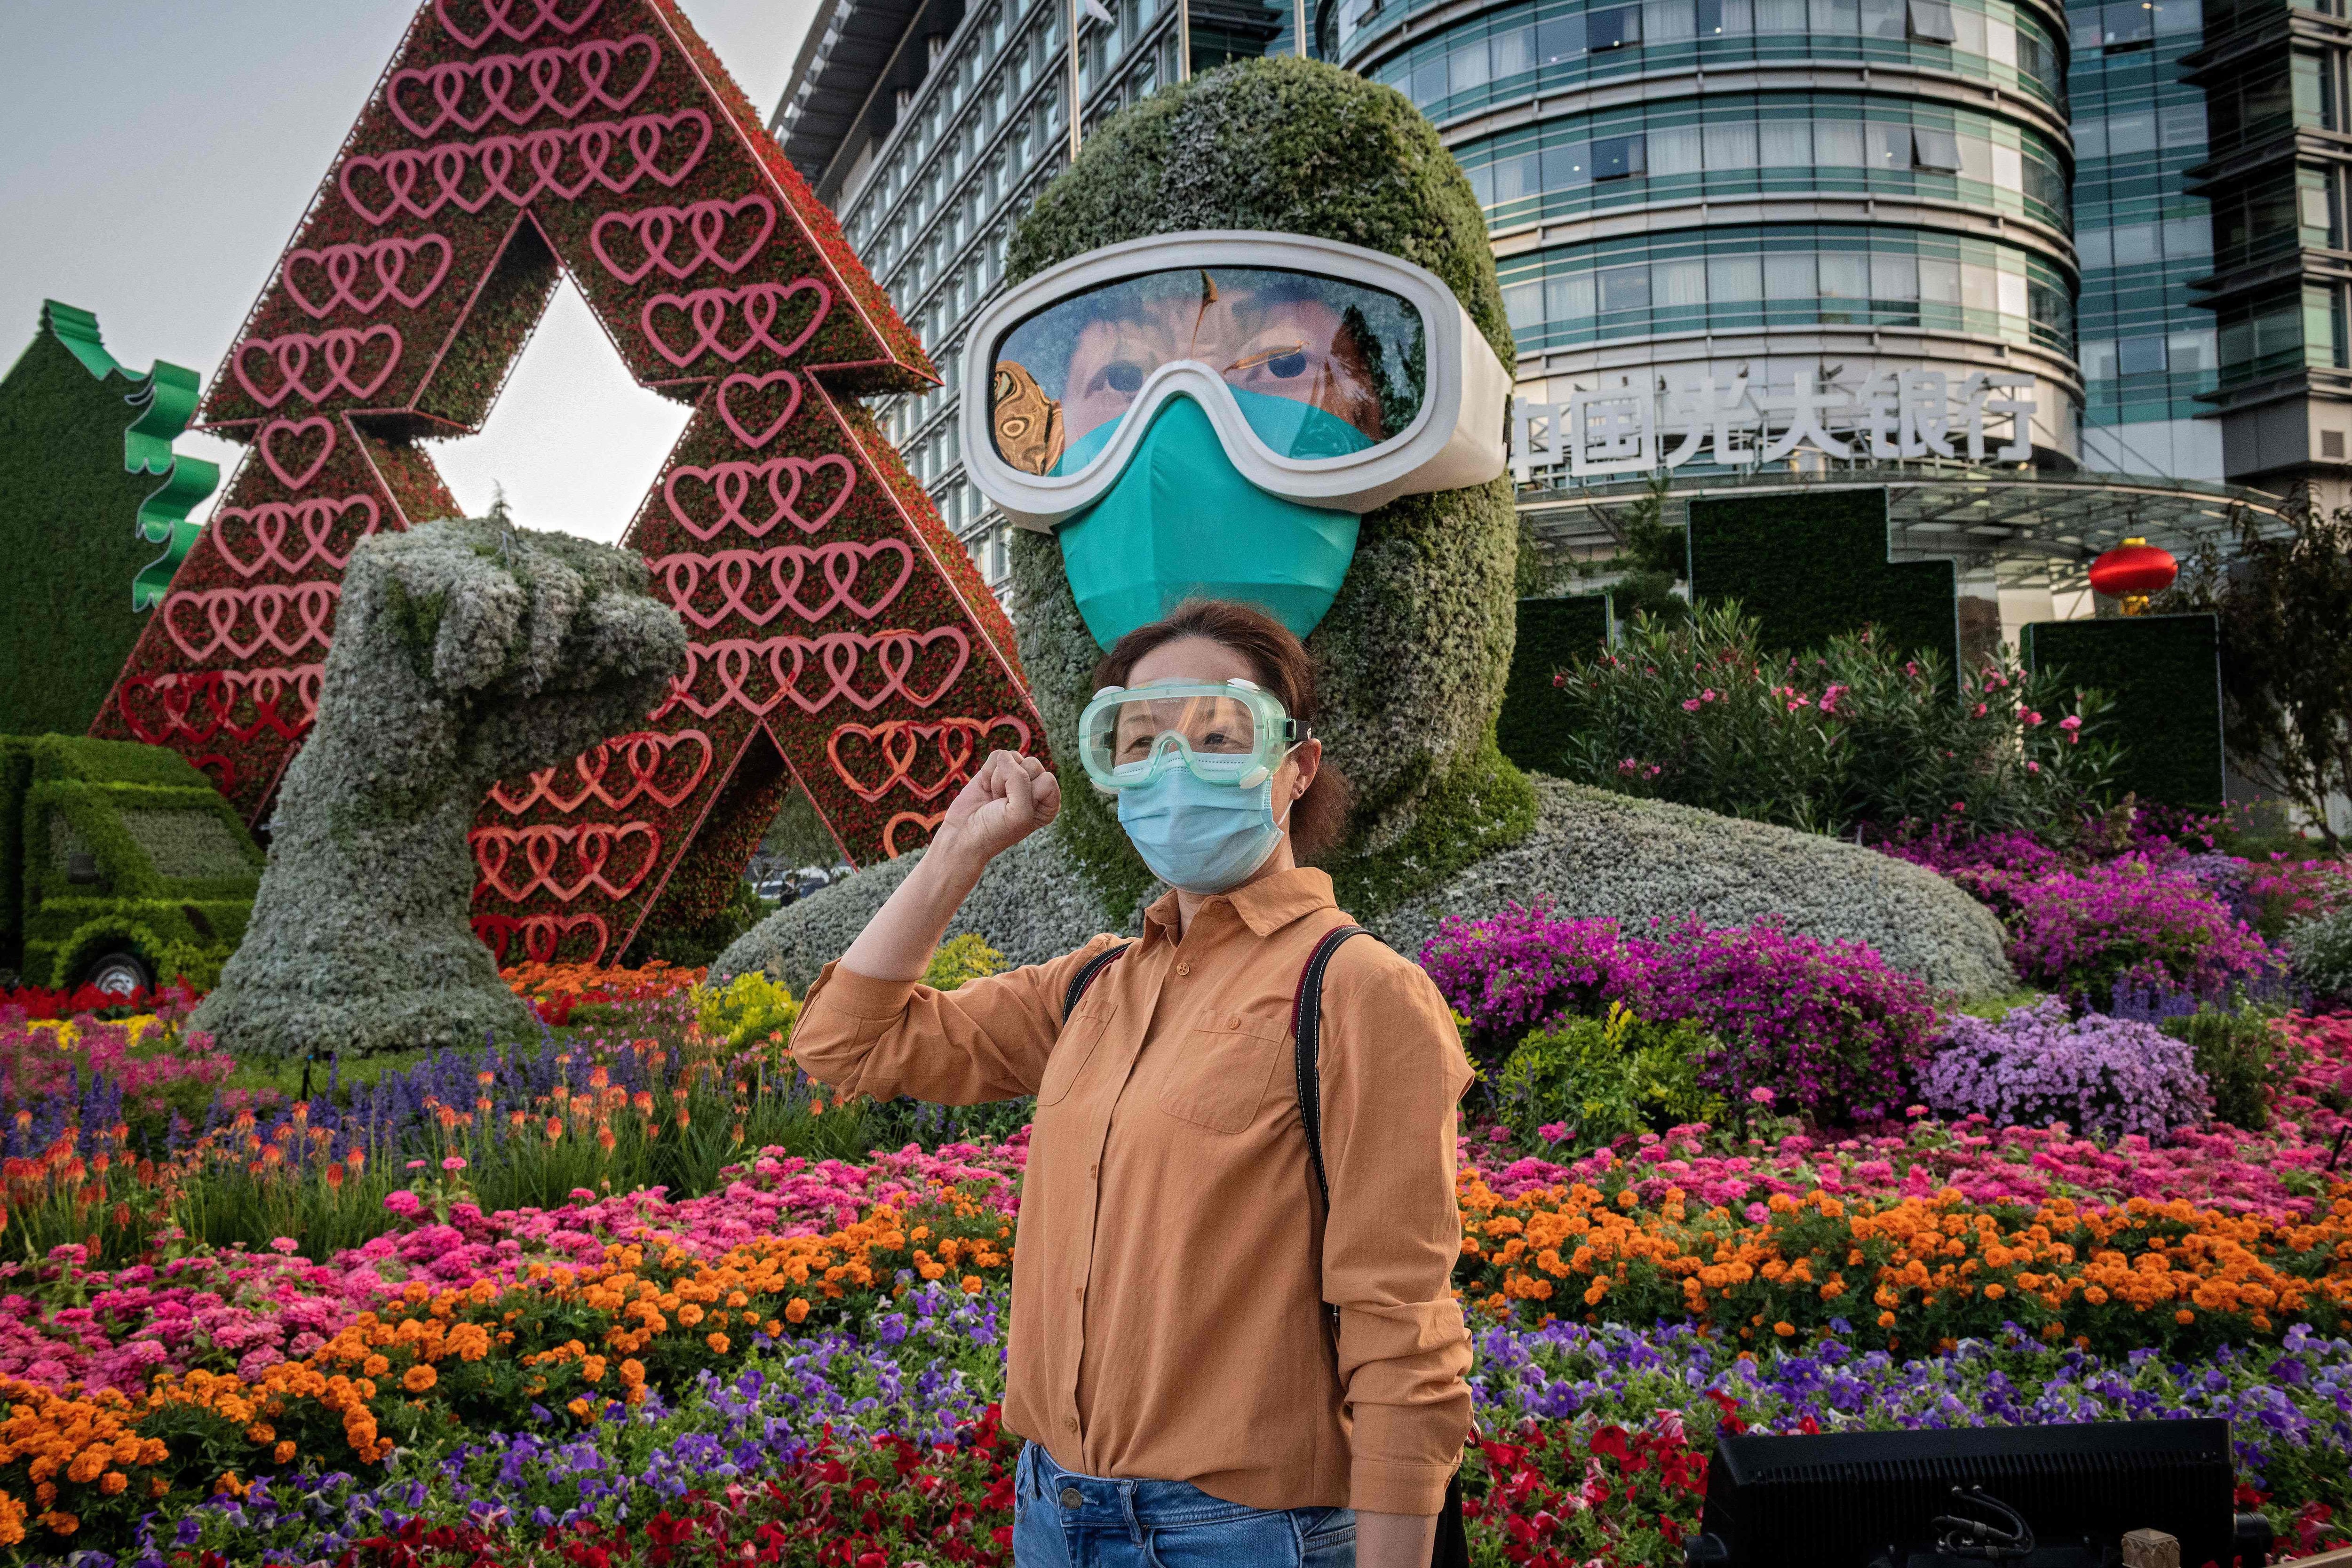 Una mujer posa frente a una exhibición de flores dedicada a los trabajadores de la salud de primera línea durante la pandemia de Covid-19 en celebración del próximo Día Nacional de la República Popular de China, en Beijing. (Foto: NICOLAS ASFOURI / AFP)